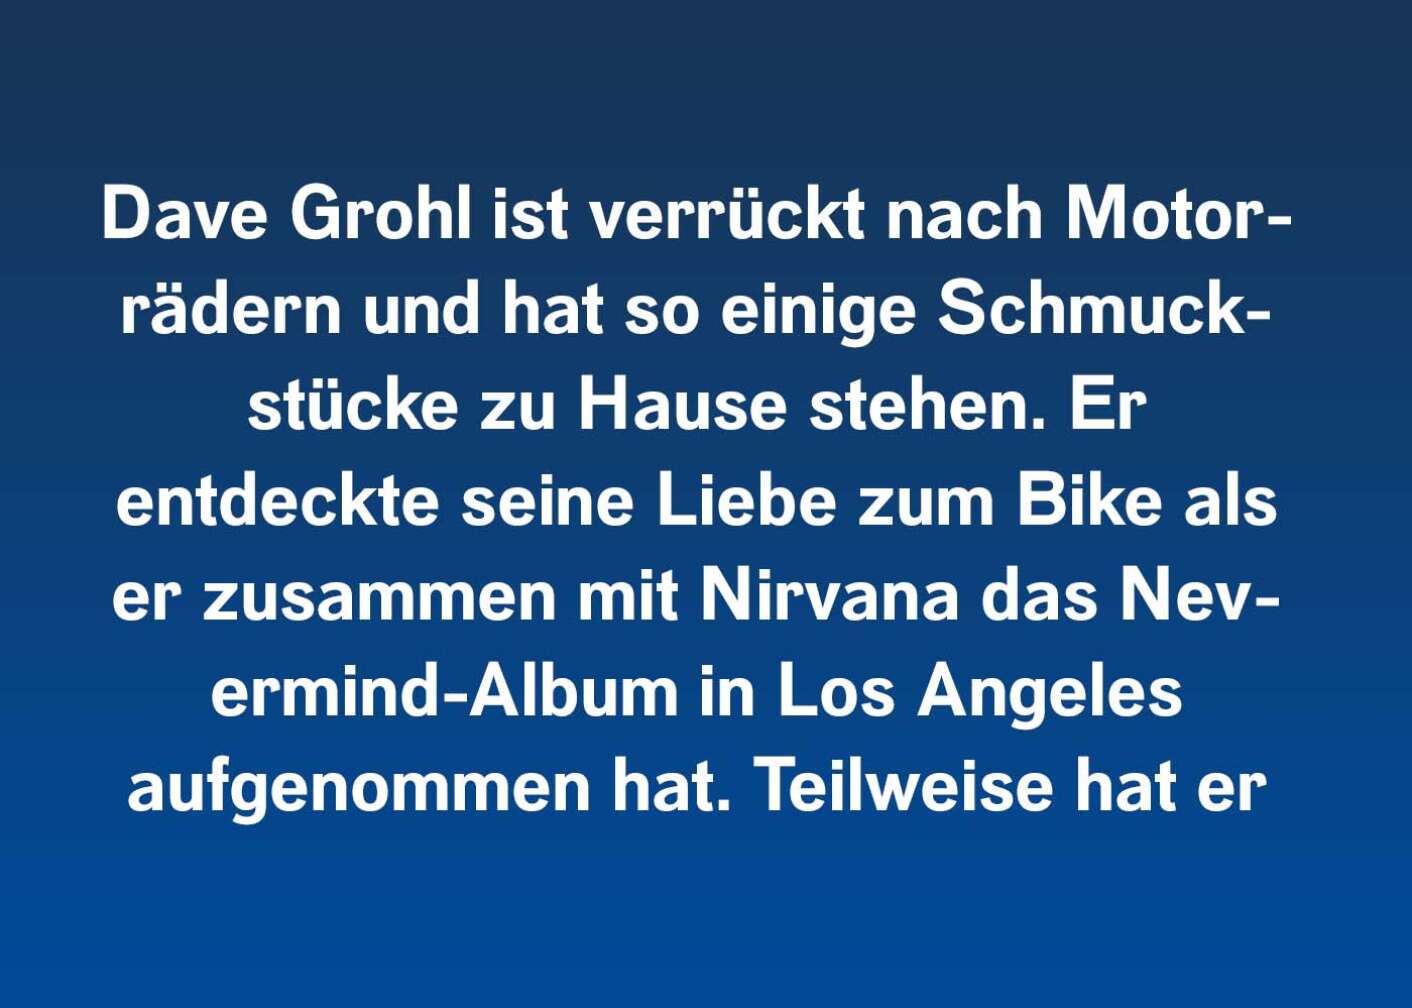 Dave Grohl ist verrückt nach Motorrädern und hat so einige Schmuckstücke zu Hause stehen. Er entdeckte seine Liebe zum Bike als er zusammen mit Nirvana das Nevermind-Album in Los Angeles aufgenommen hat. Teilweise hat er sich für seine Musik vom unverwechselbaren Harley-Sound inspirieren lassen.